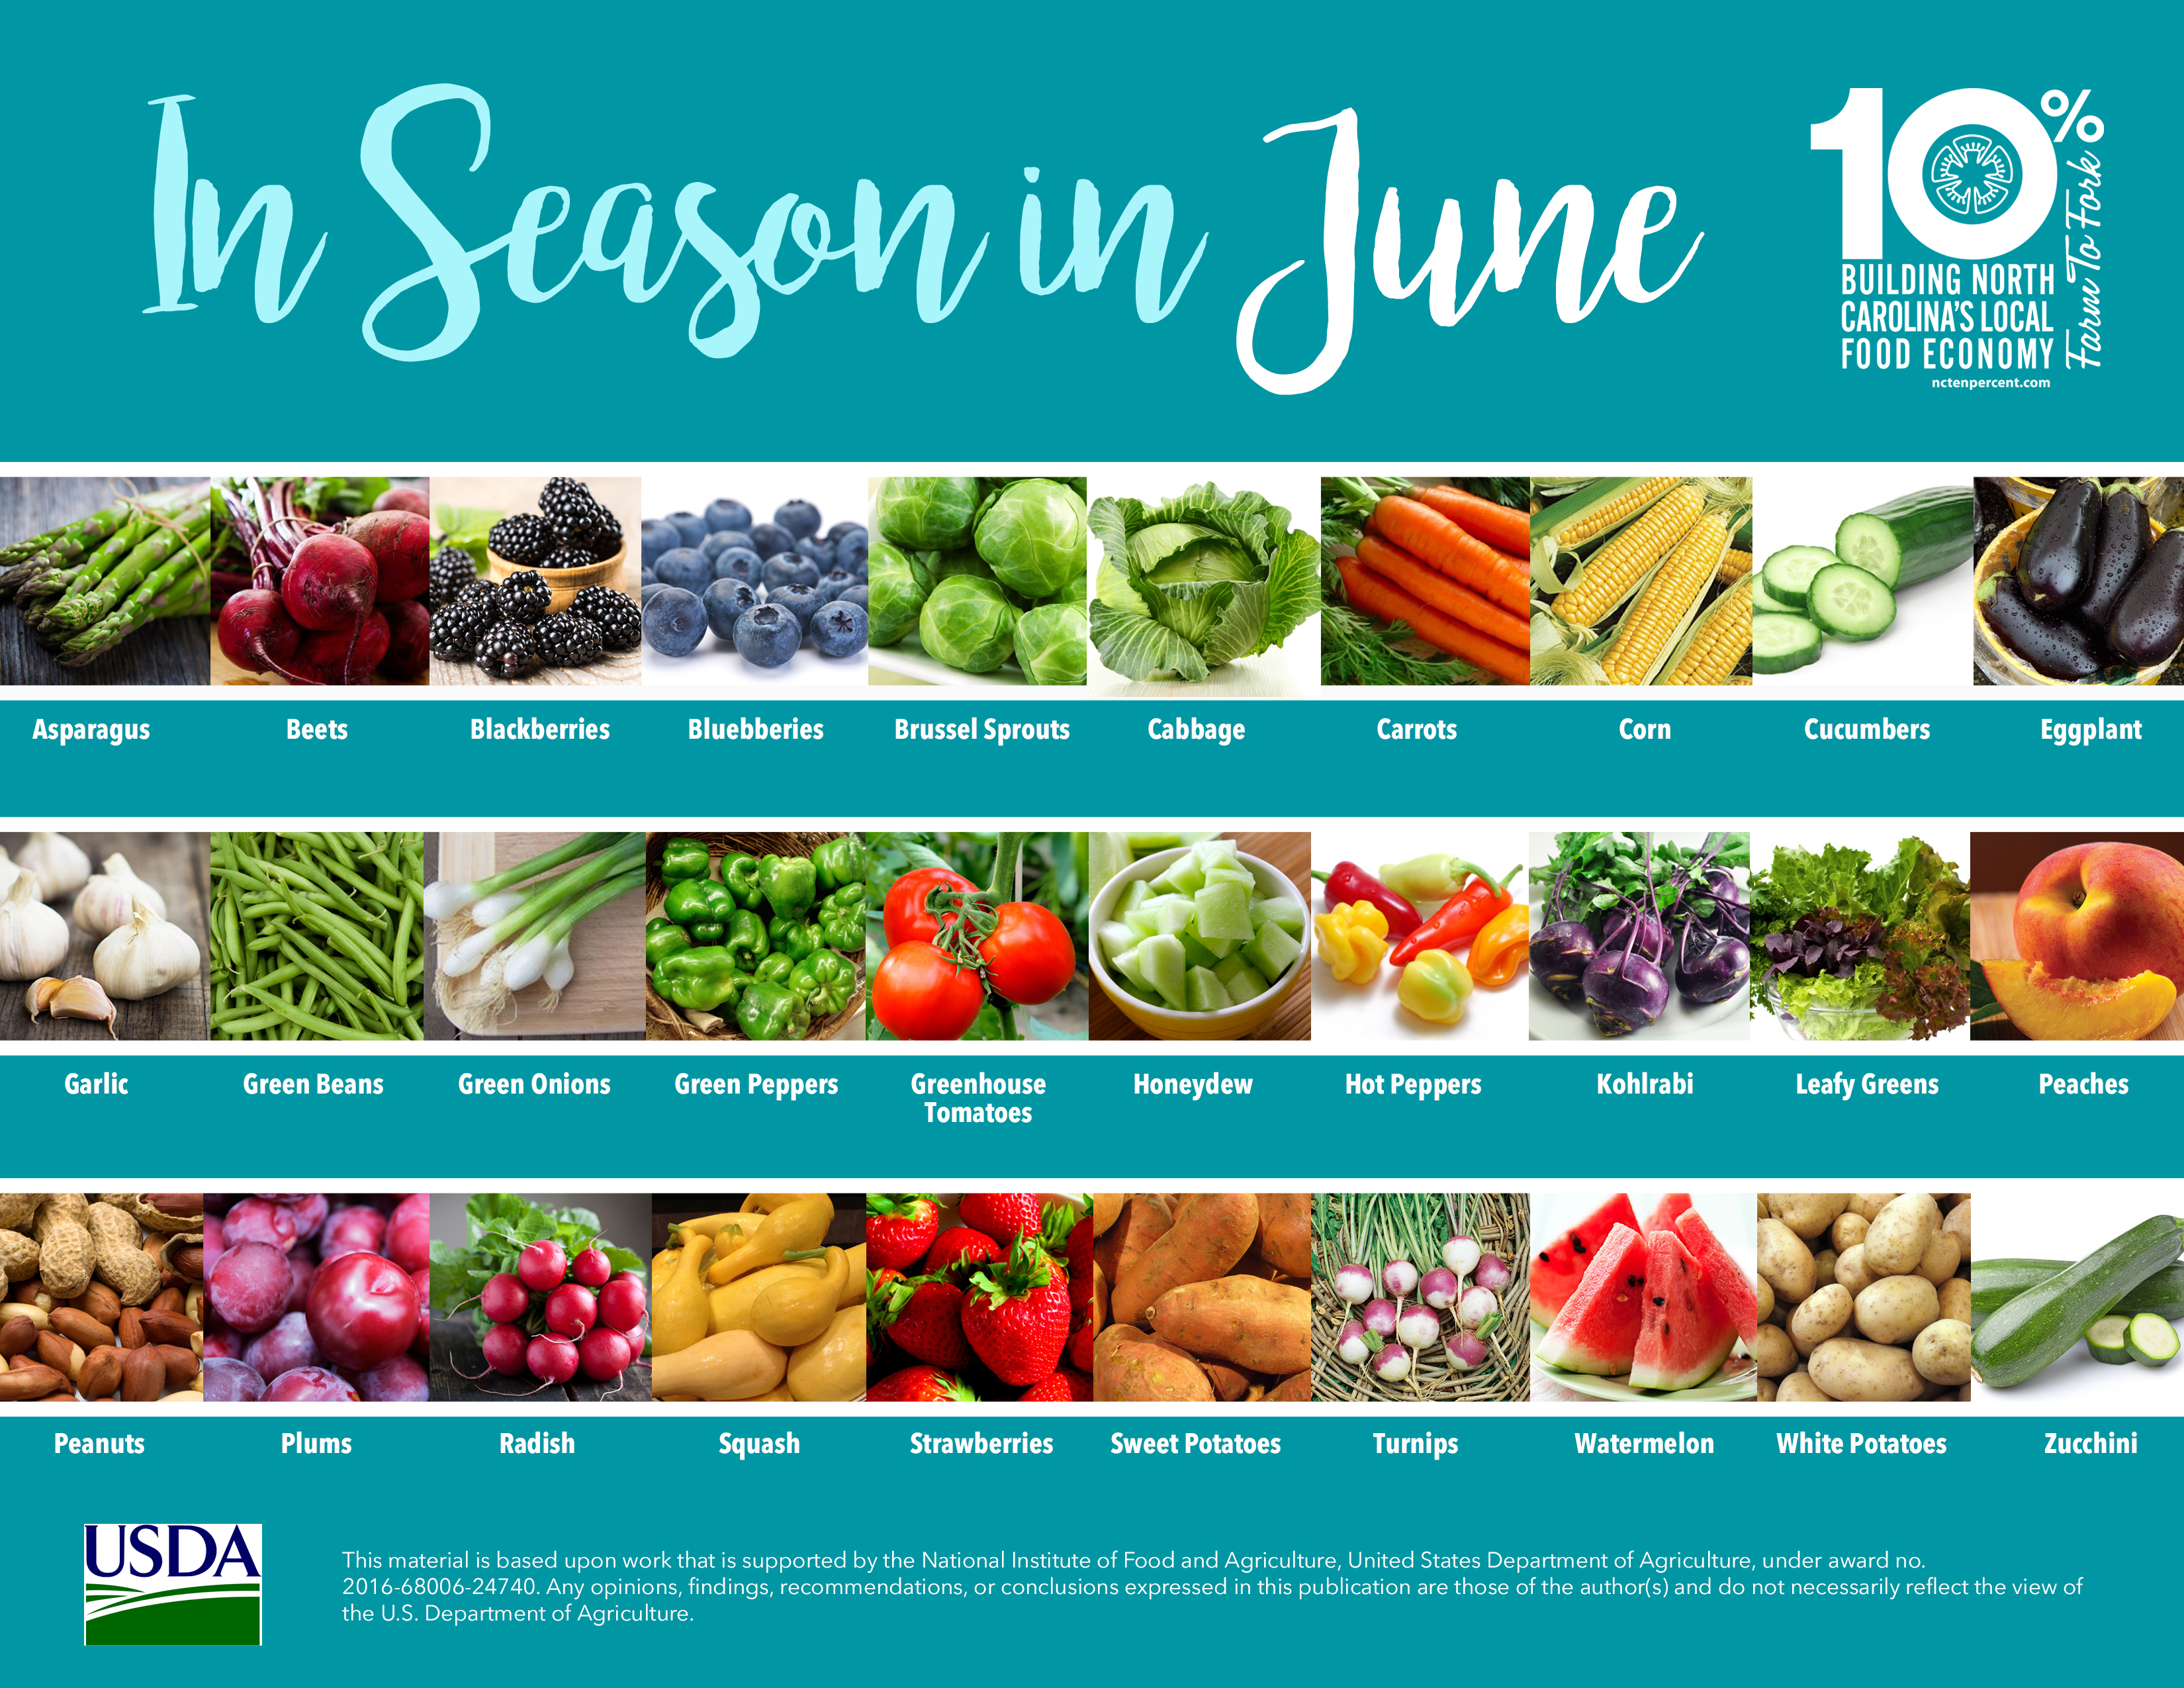 pics of fruits and veggies in season-June